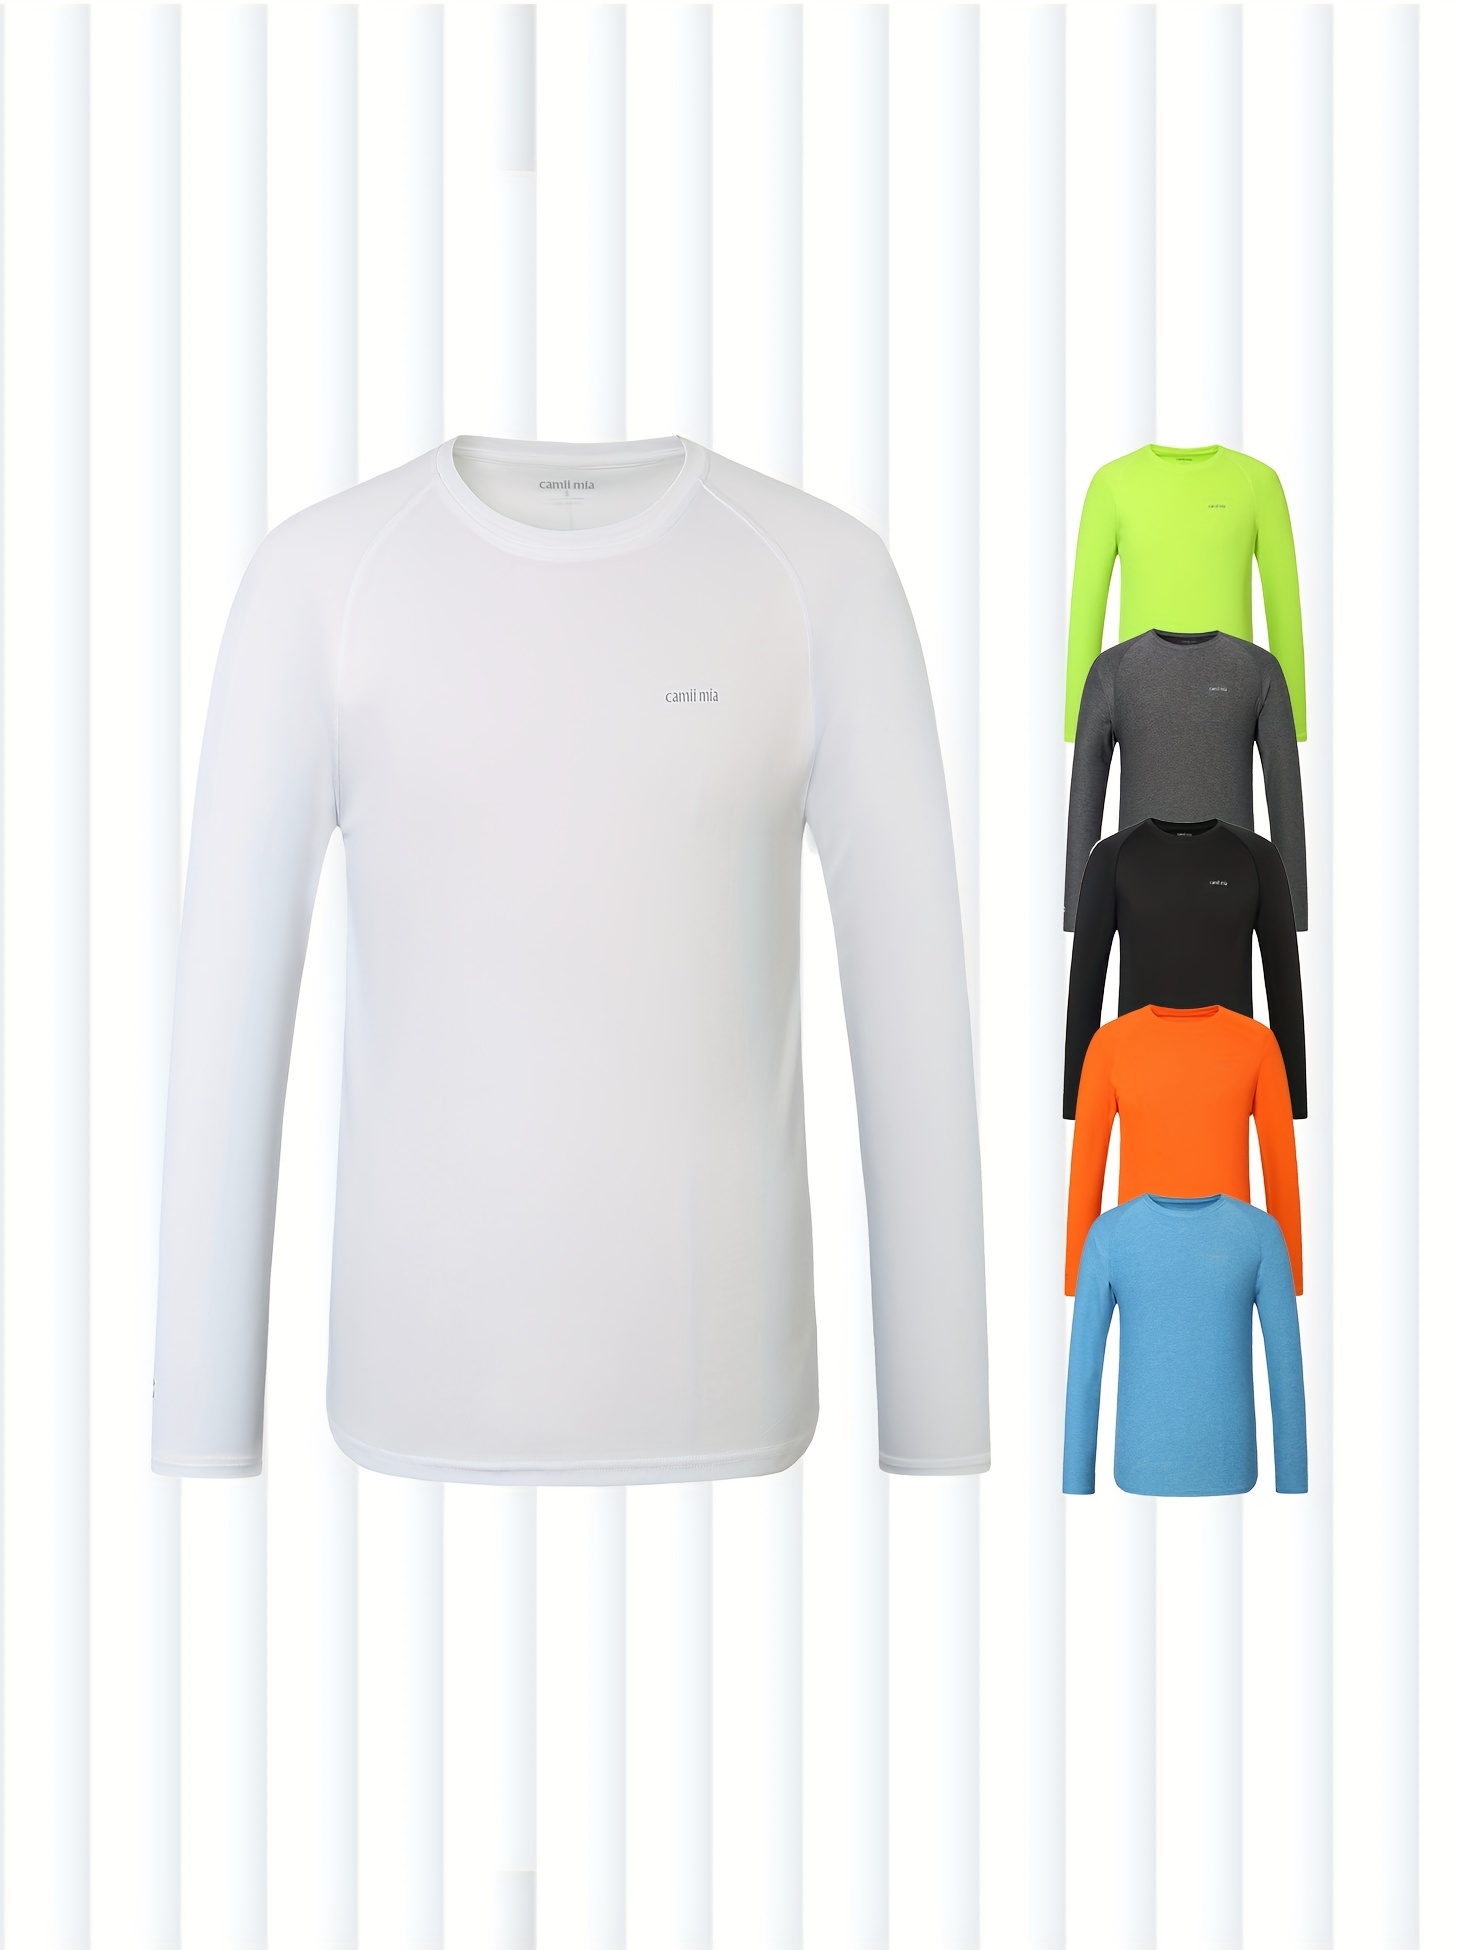 Buy Mens UV Protection Shirts Long Sleeve Running Shirt Online at